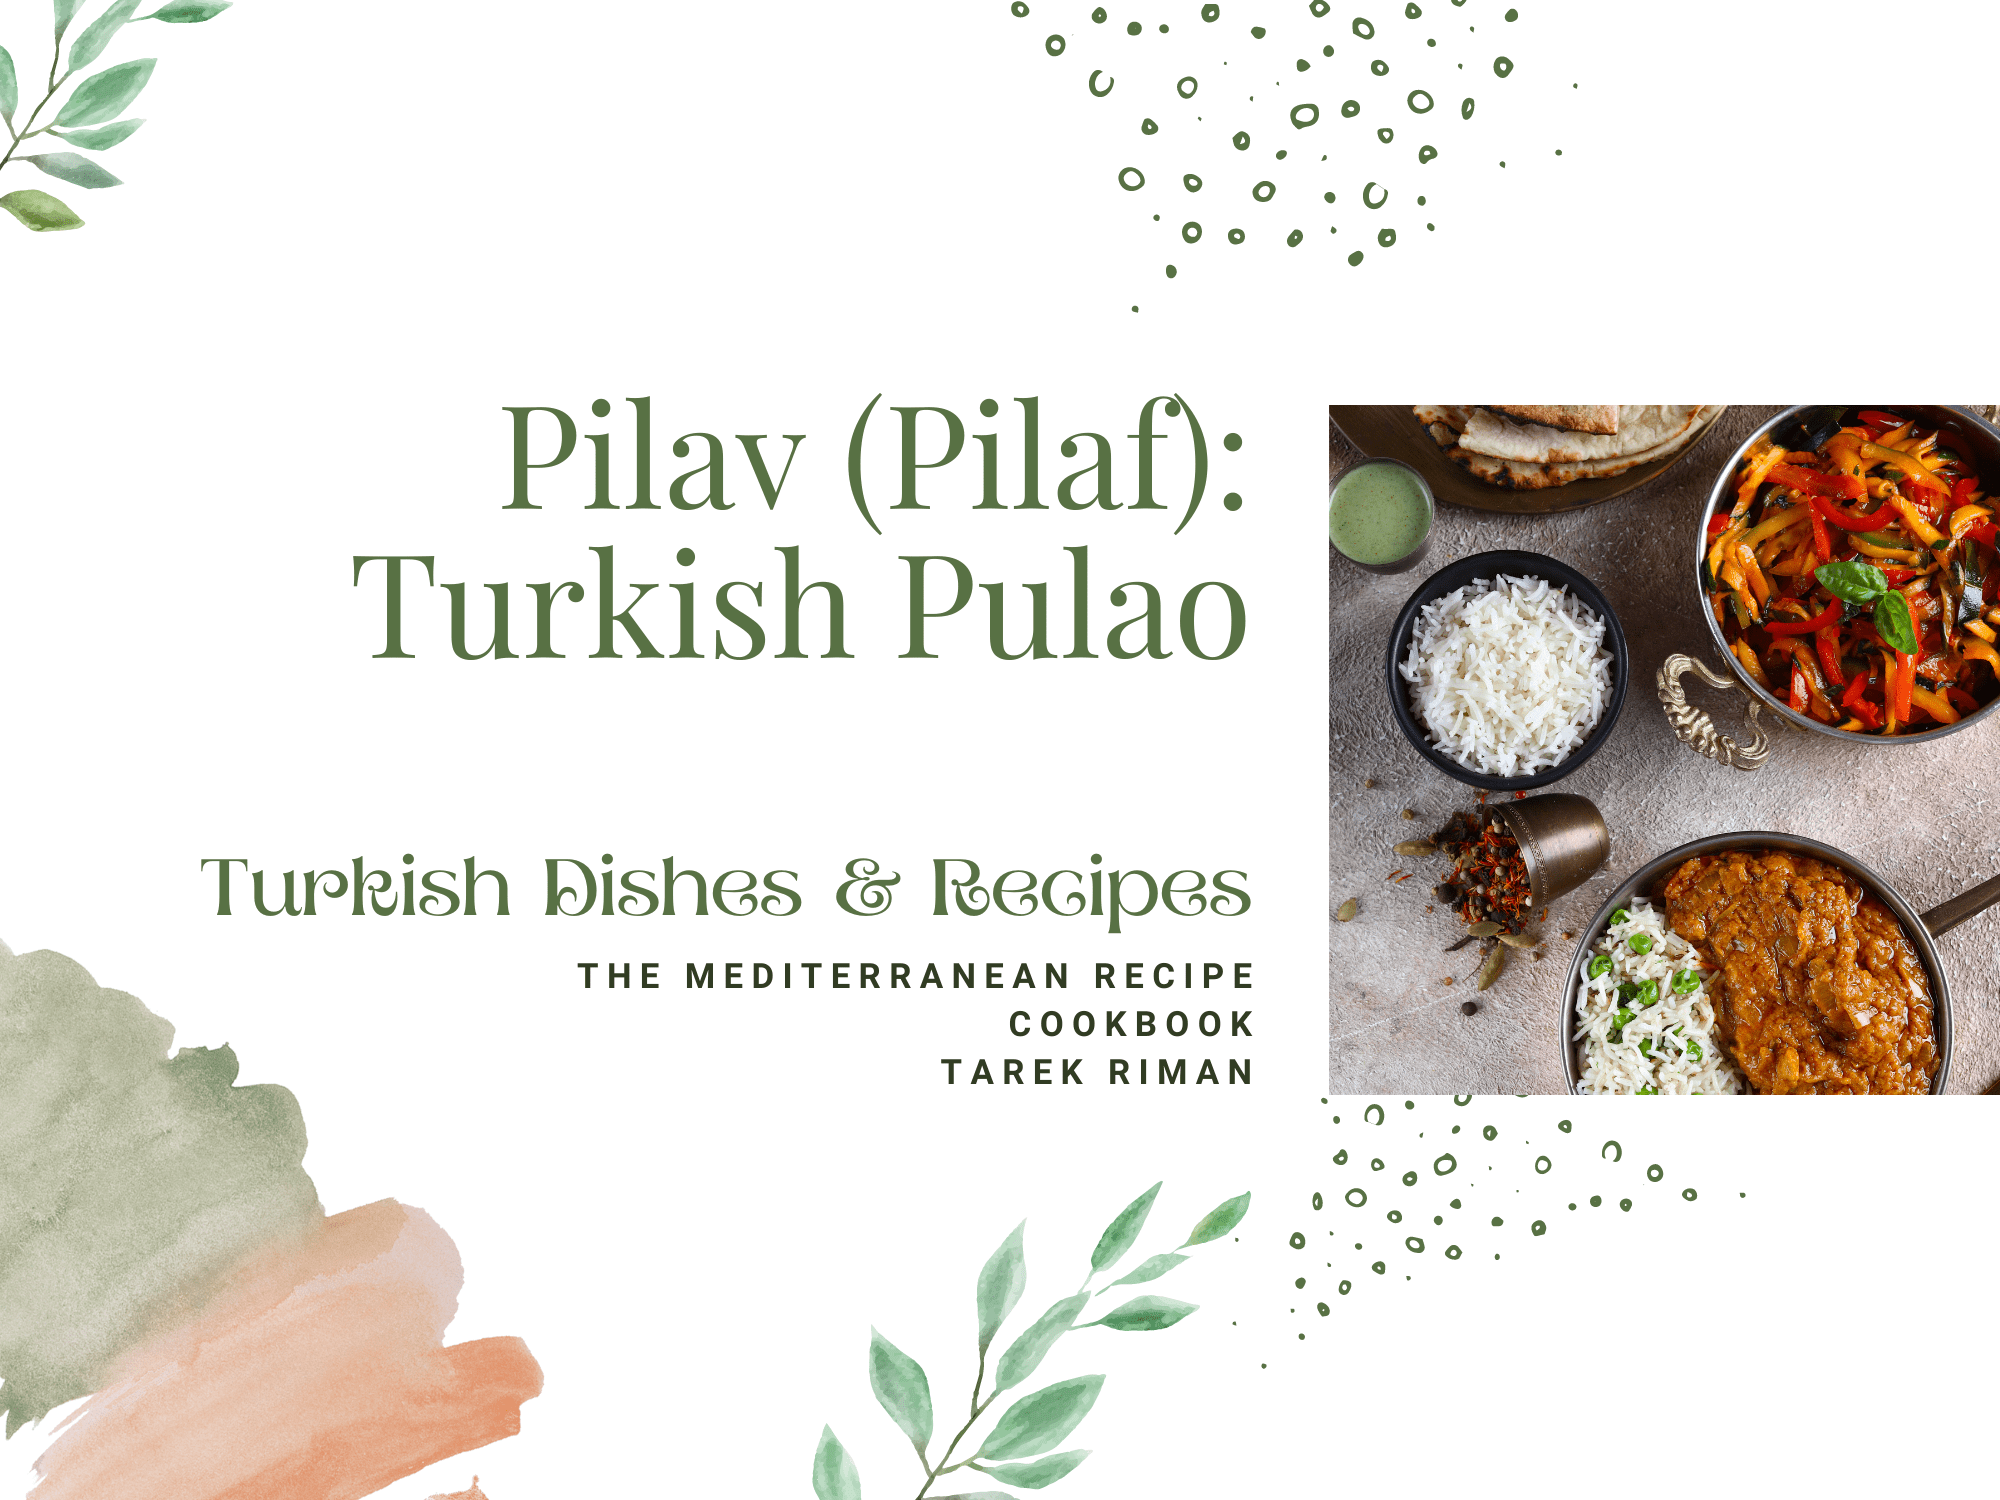 How to make Pilav (Pilaf): Turkish Pulao